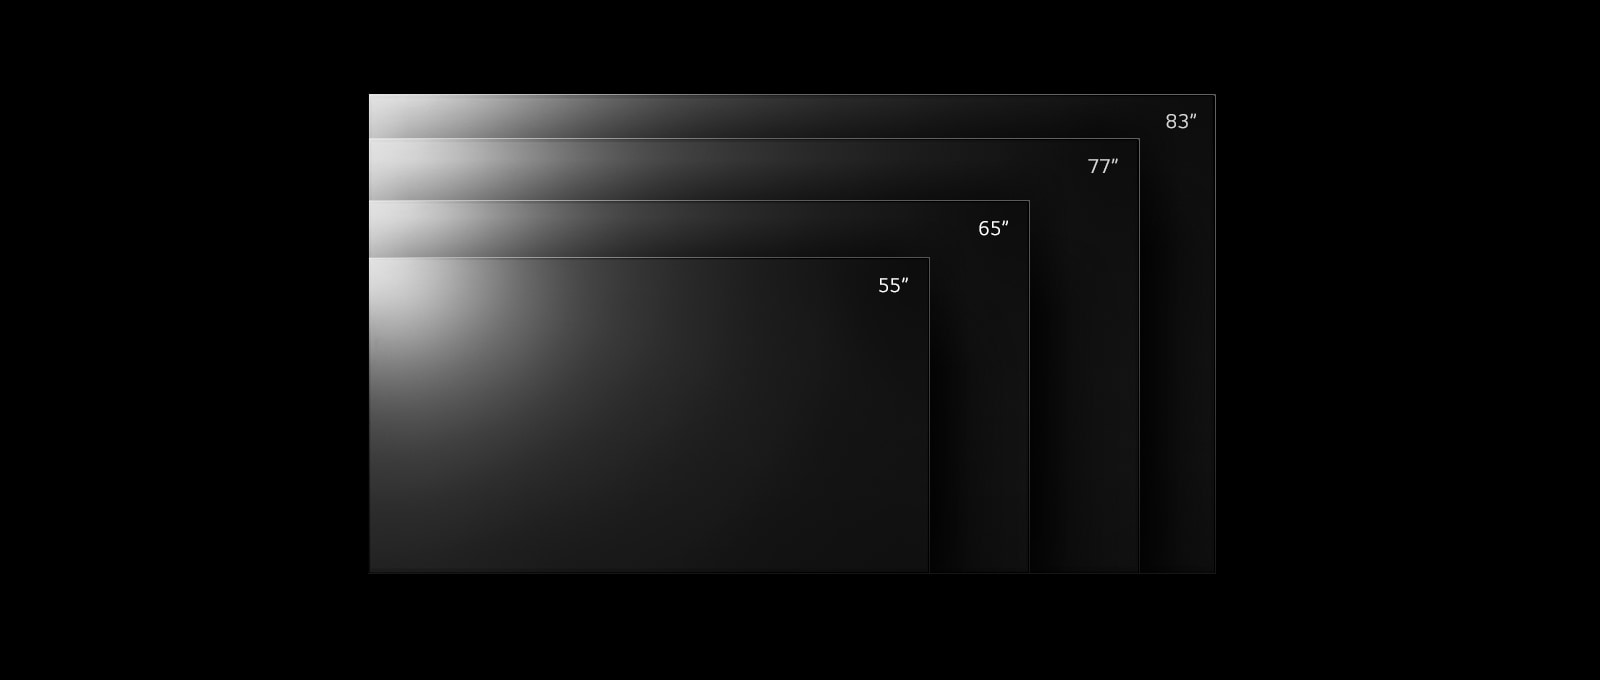 Linija televizorjev LG OLED G2 v različnih velikostih od 55 do 83 palcev.